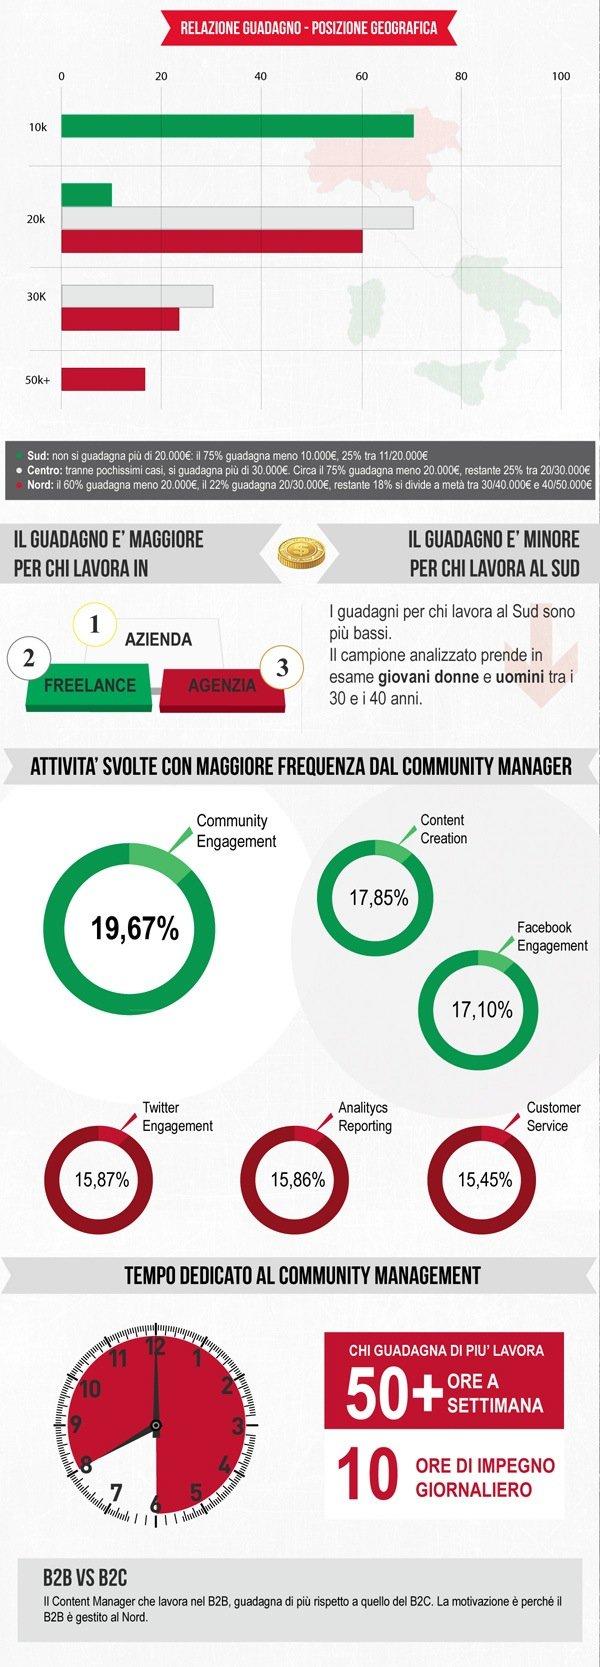 Il profilo del Community Manager in Italia